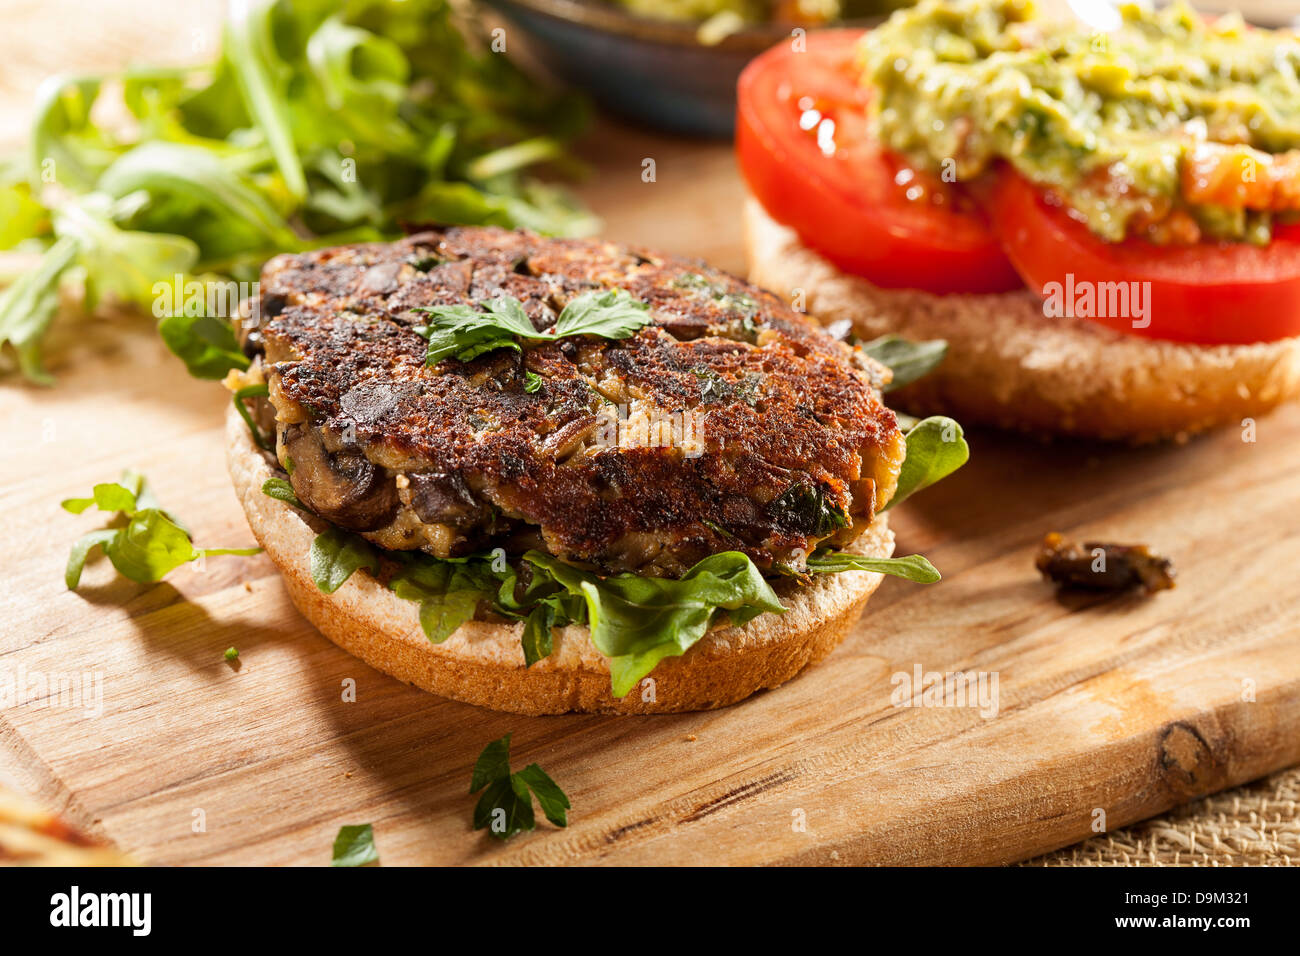 Champignons Burger végétarien bio faits maison avec de la tomate et de guacamole Banque D'Images